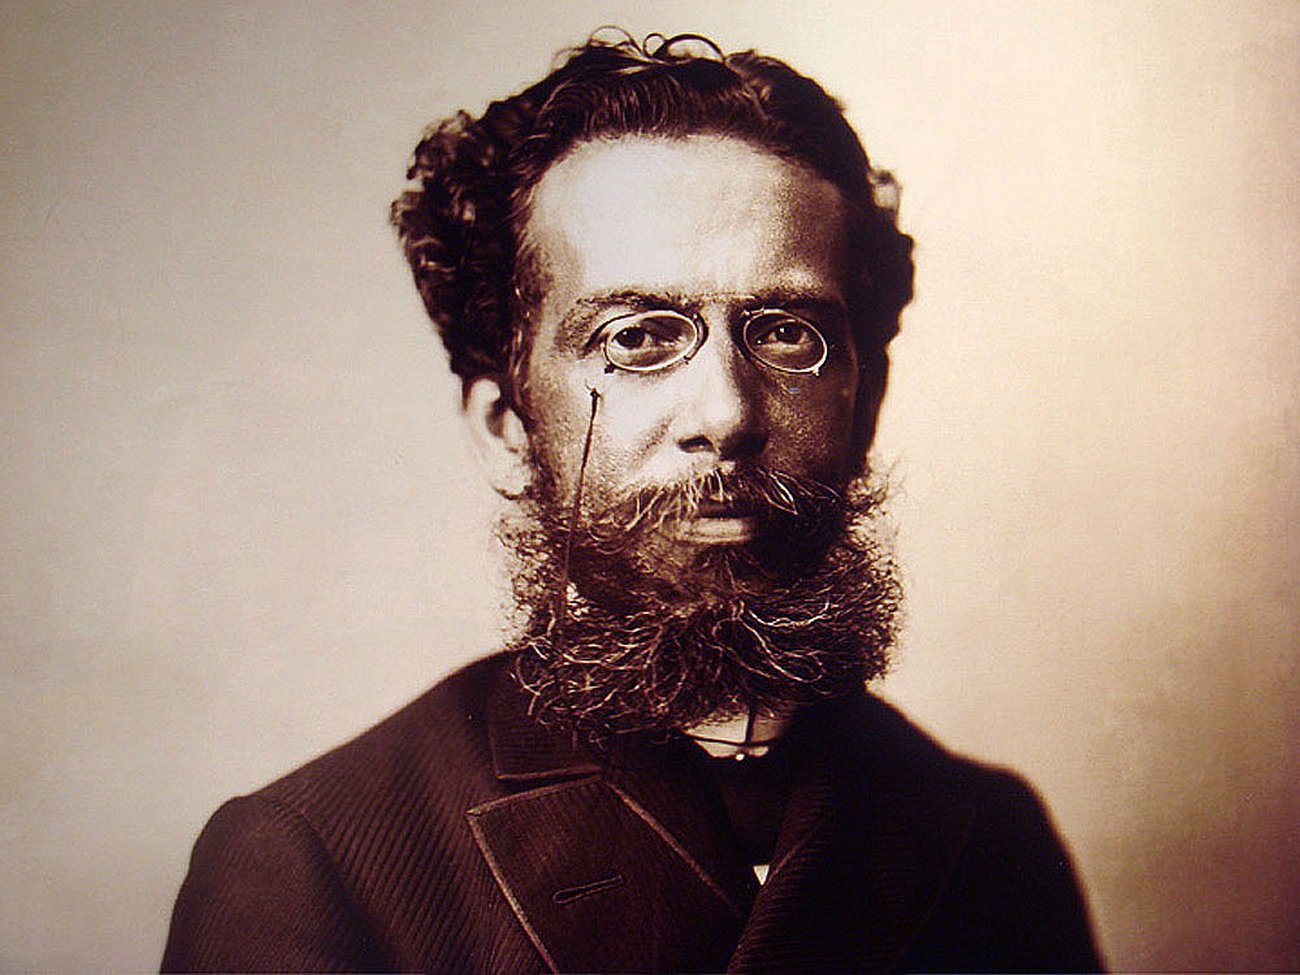 Machado de Assis nos deixou em 1908, mas suas obras perduram até hoje, e são aclamadas por muitos